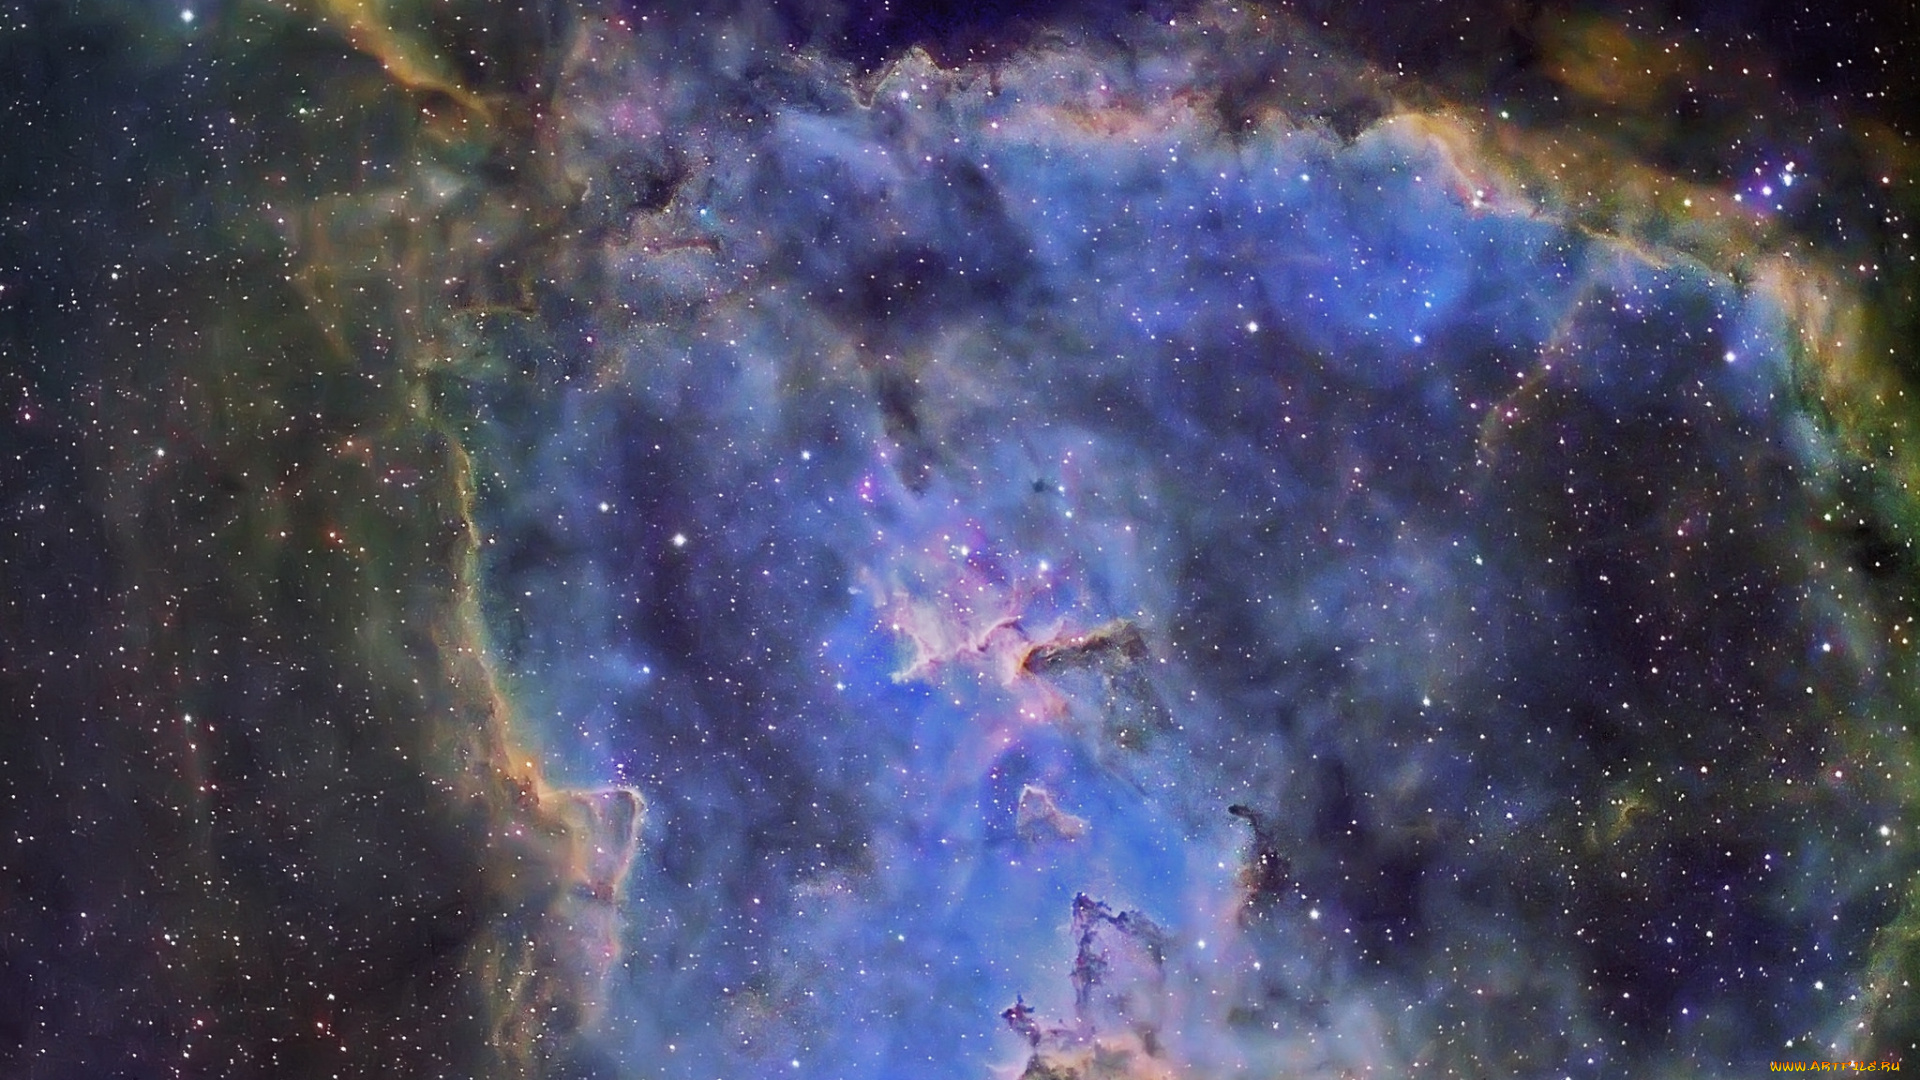 ic1805, heart, nebula, космос, галактики, туманности, туманность